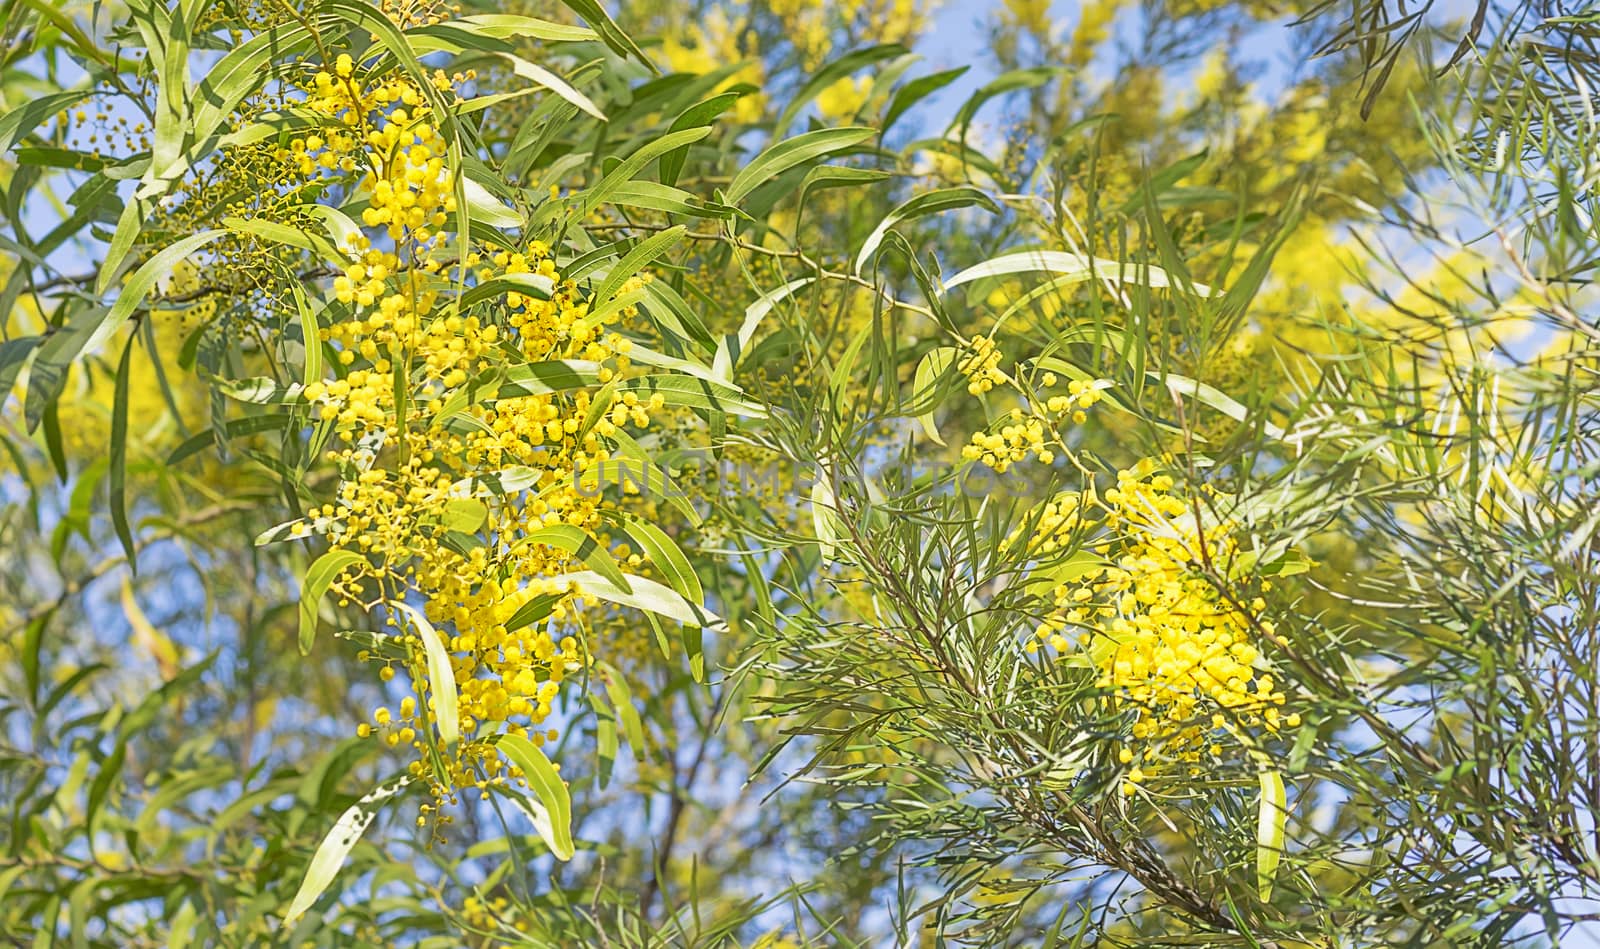 Australian bush scene with wattle flowers by sherj